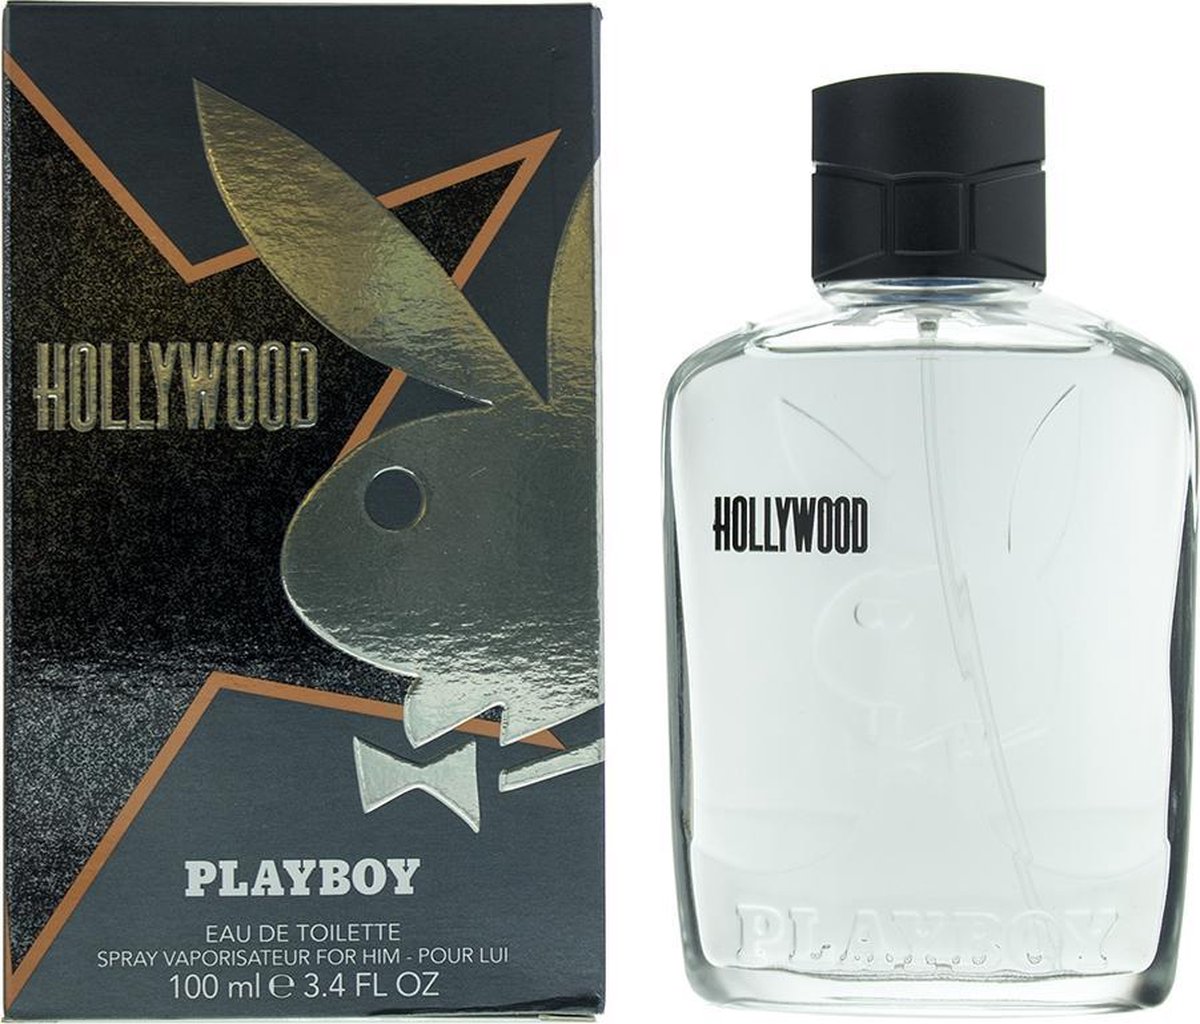 Hollywood Playboy by Playboy 100 ml - Eau De Toilette Spray